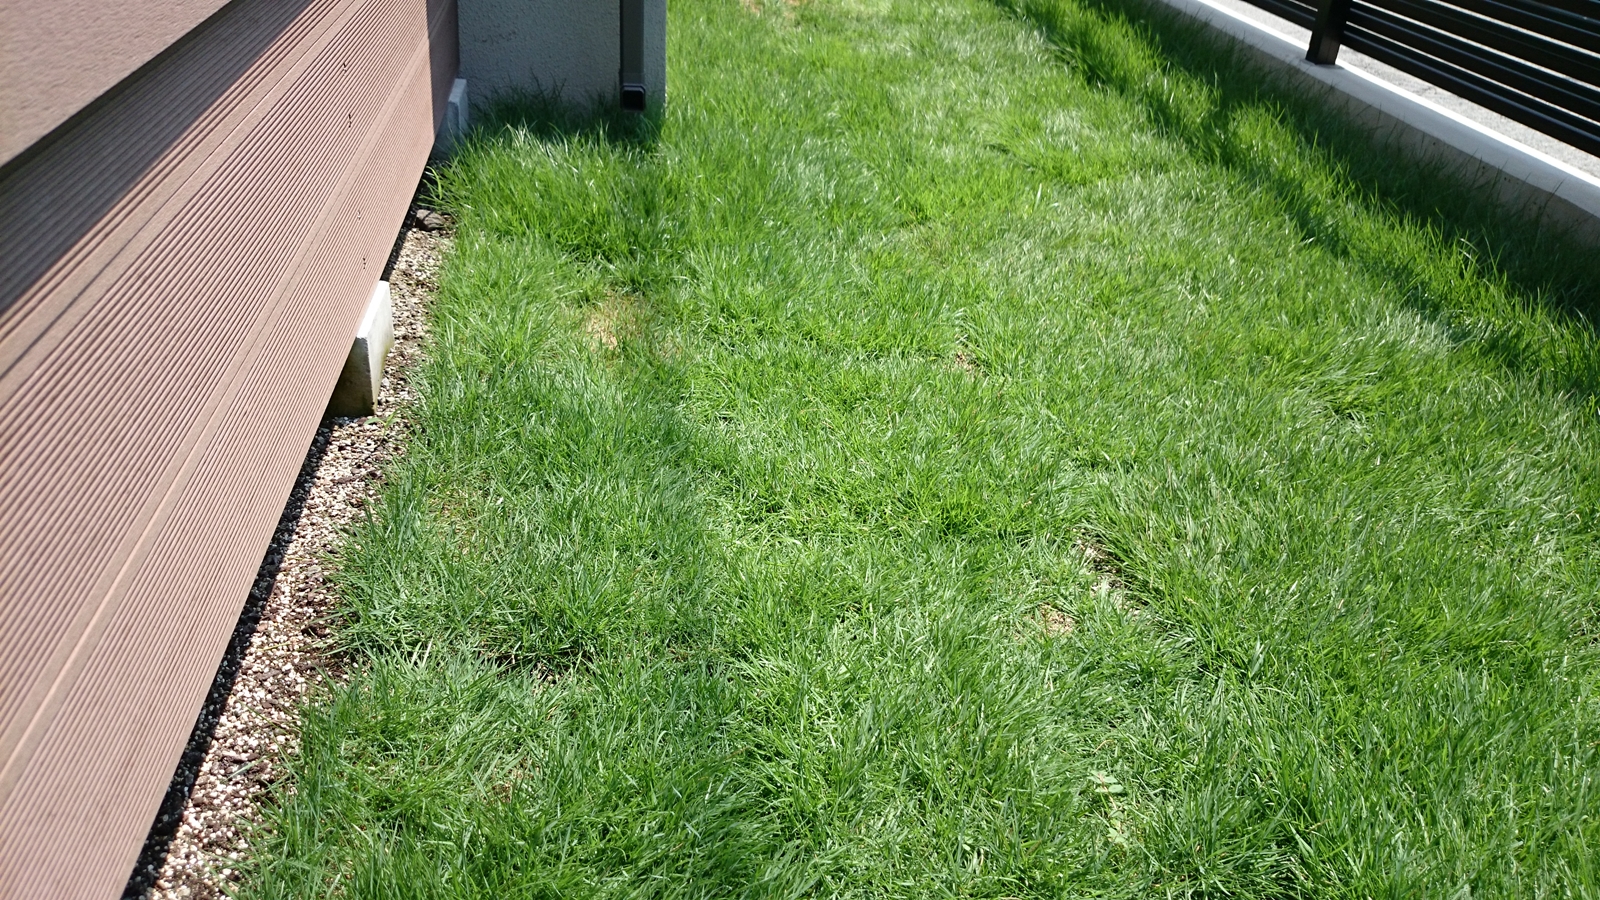 Diyガーデニング 知らなかった芝のお手入れ方法と2年目の芝生の様子 初めての芝張り Smart House Cool Life